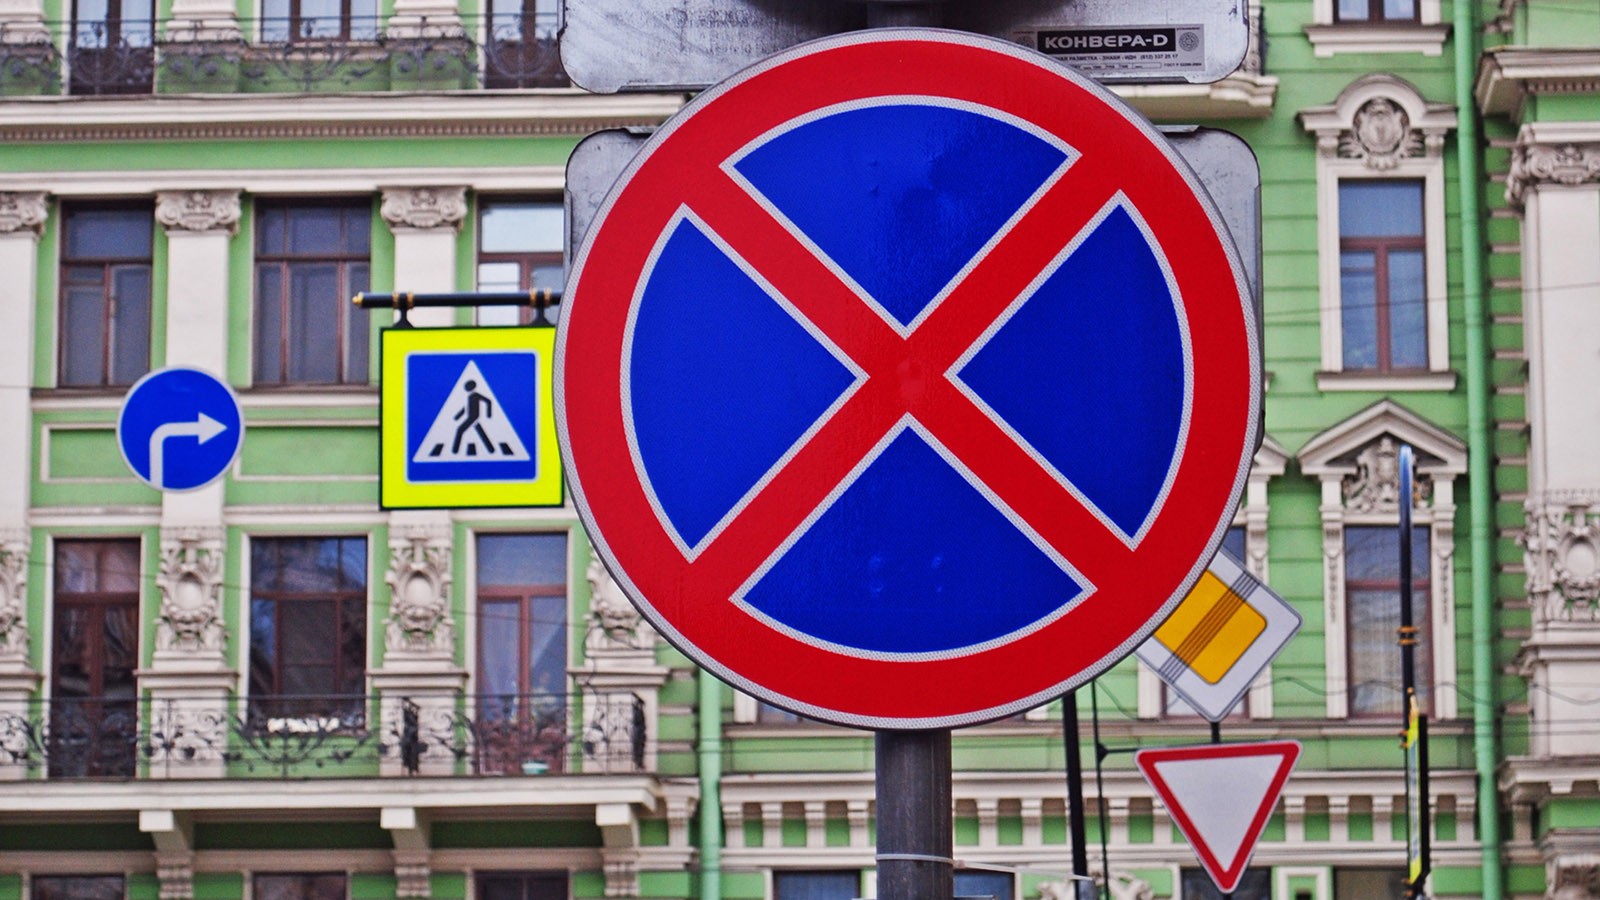 road signs in Saint-Petersburg, Russia